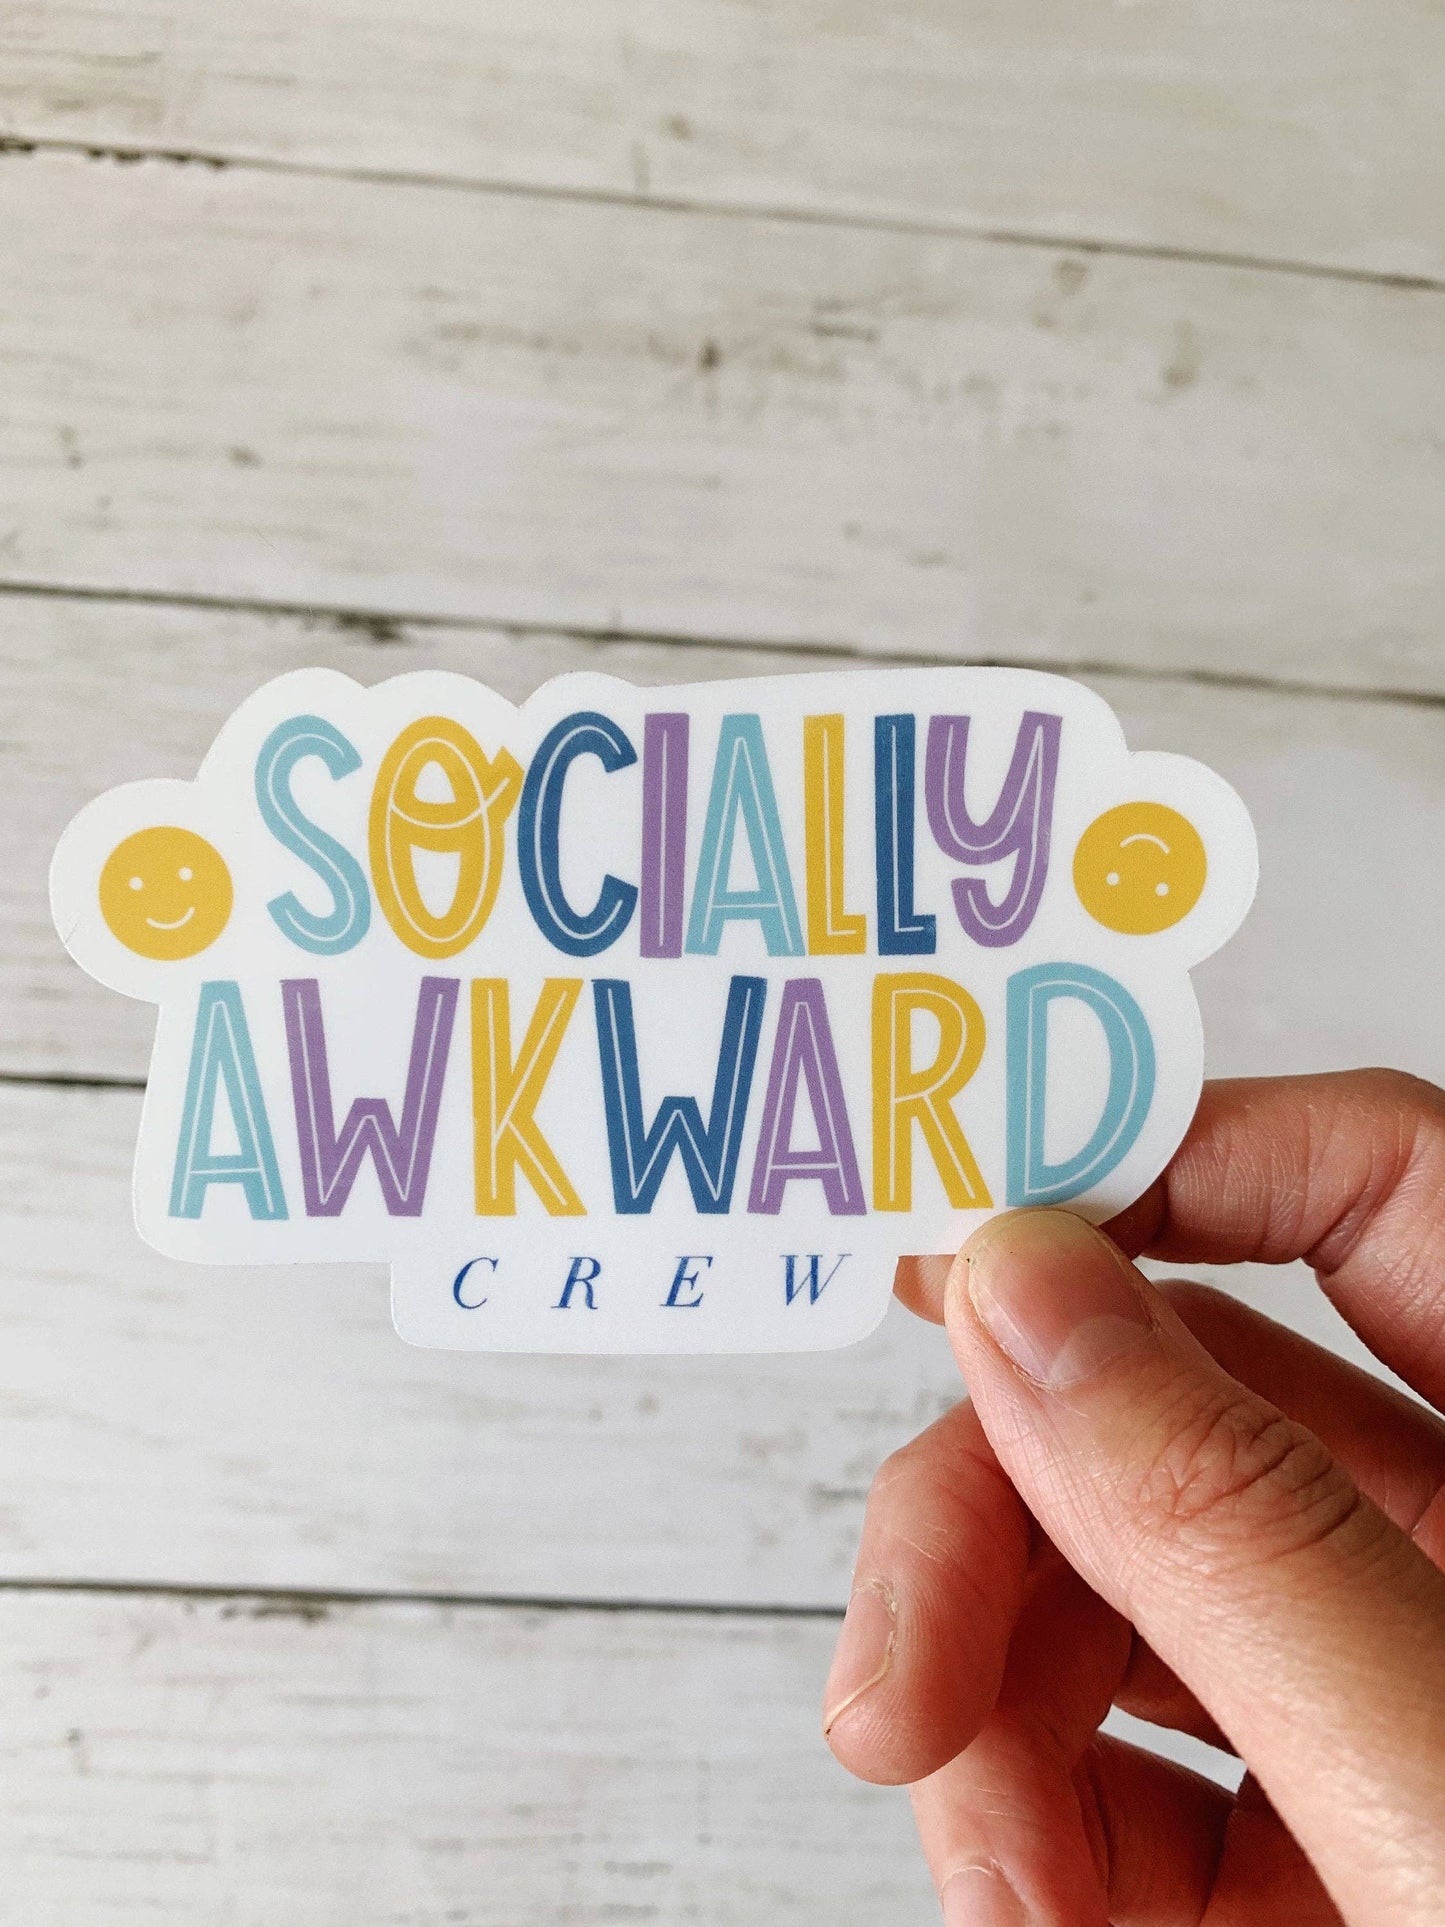 Sticker-Social-12: Socially Awkward Crew